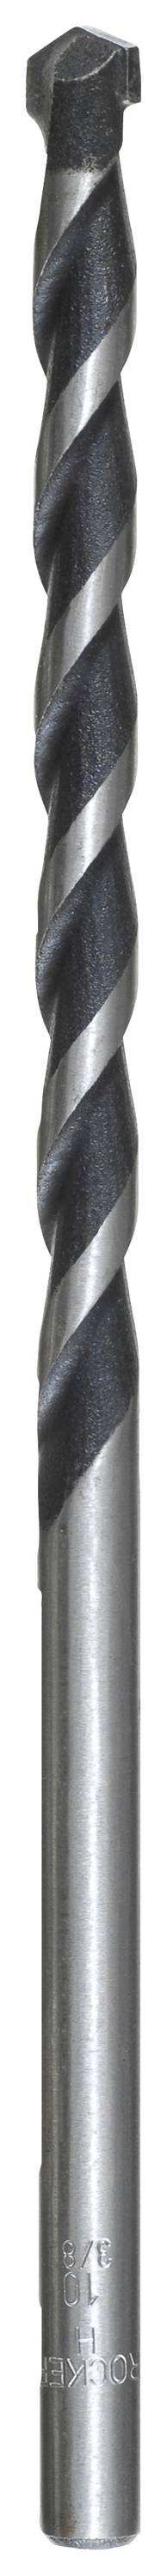 KWB 045100 Hartmetall Beton-Spiralbohrer 10.0 mm Gesamtlänge 250 mm Zylinderschaft 1 Stück (045100)